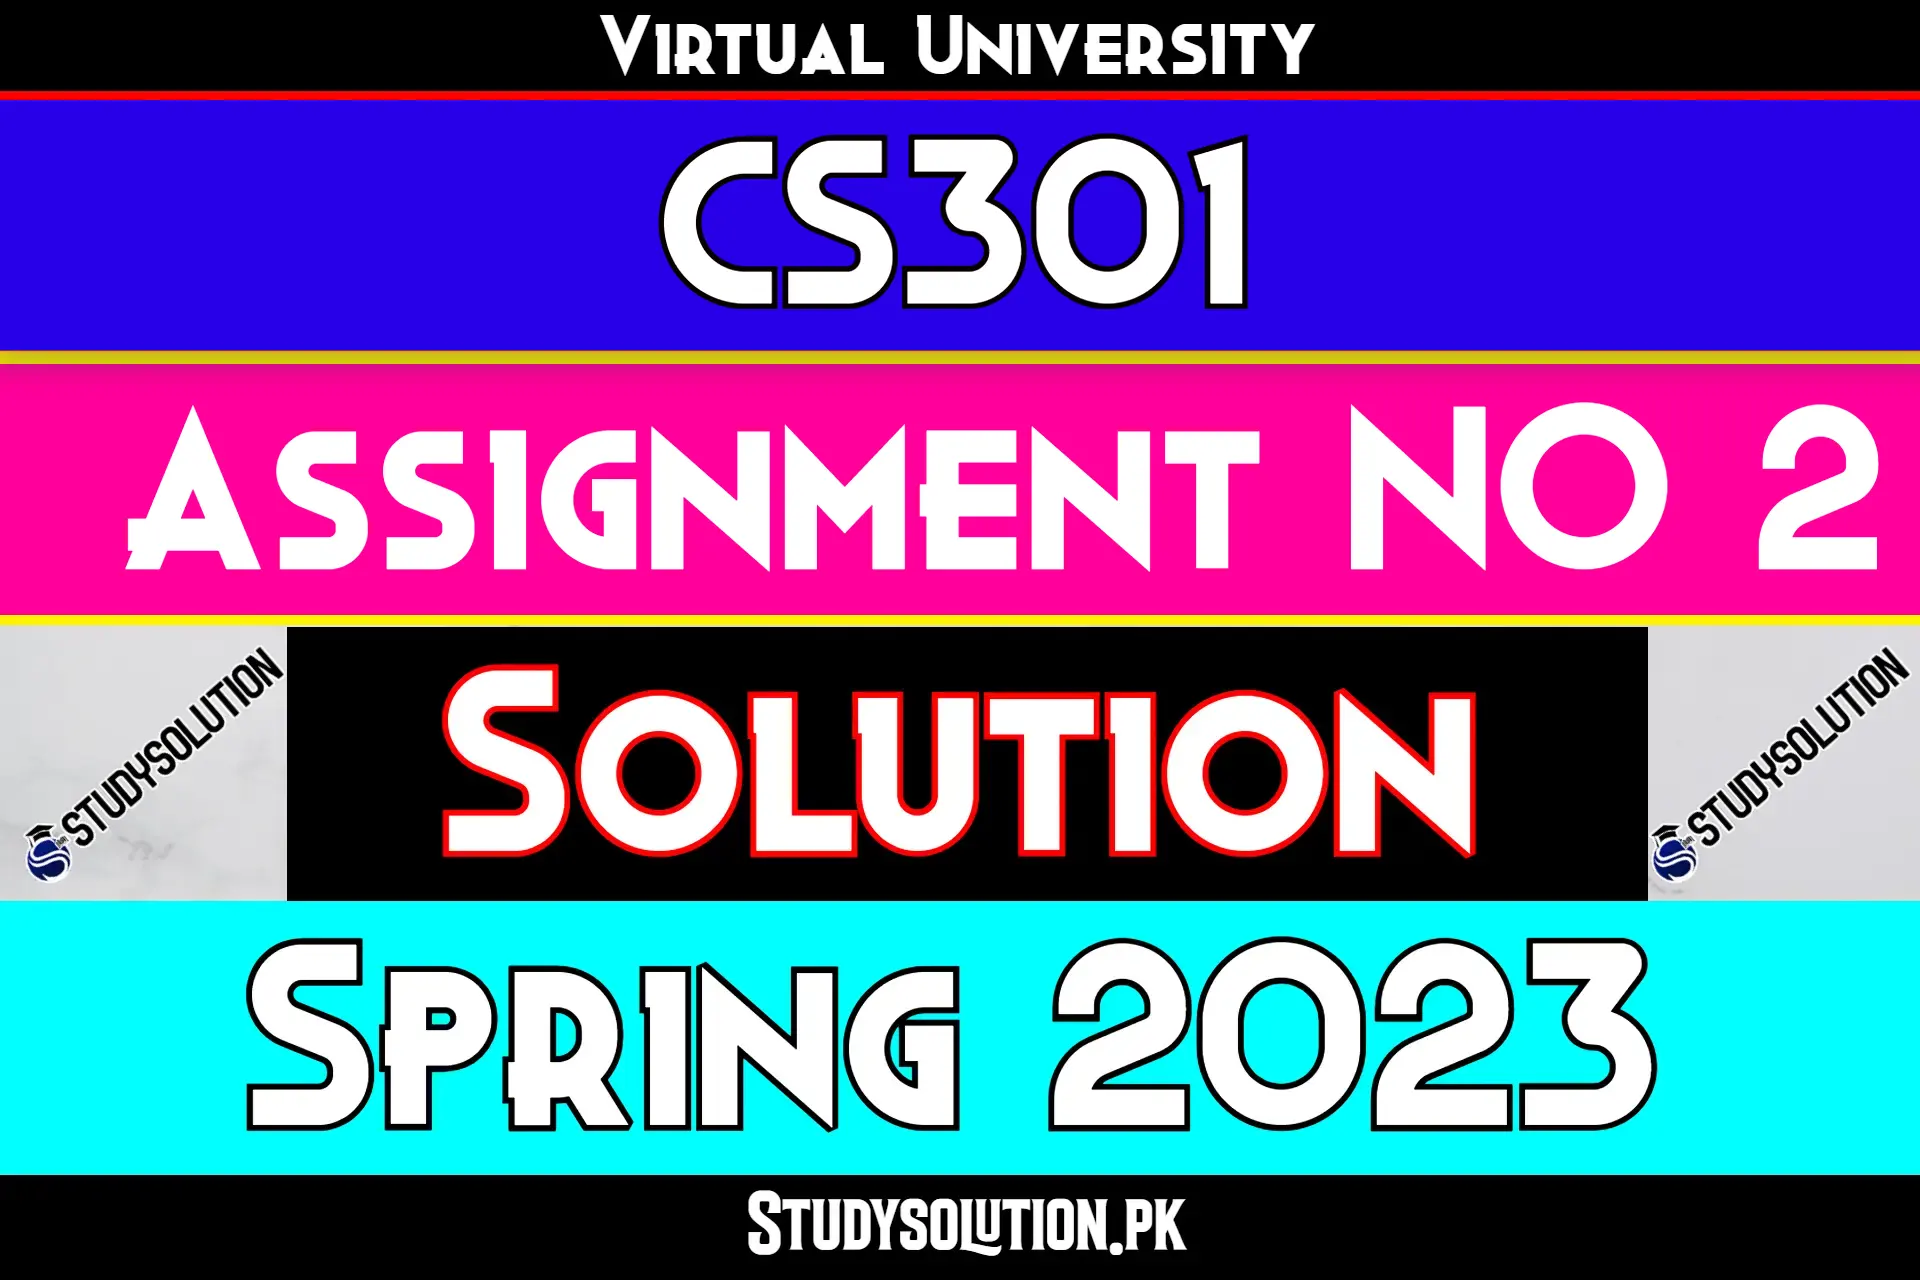 CS301 Assignment No 2 Solution Spring 2023